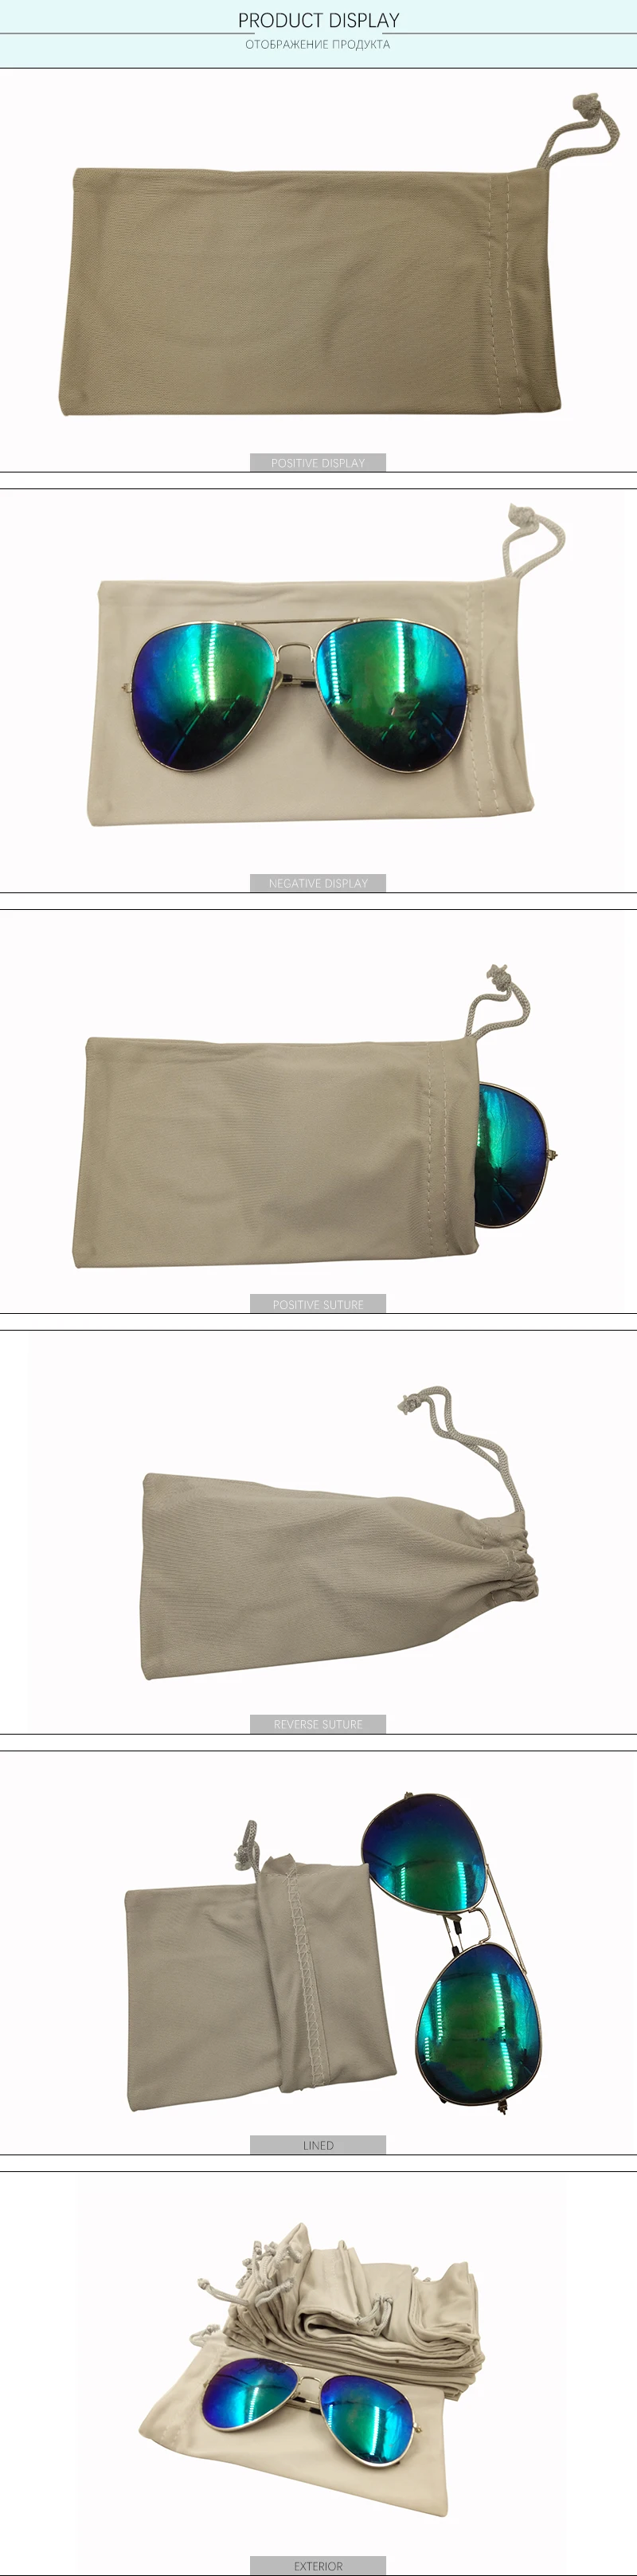 JIU ZHI XING 50 шт. высокое качество ткань мягкая ткань пылезащитный чехол солнцезащитные очки сумка мягкие очки сумка футляр бежевый цвет